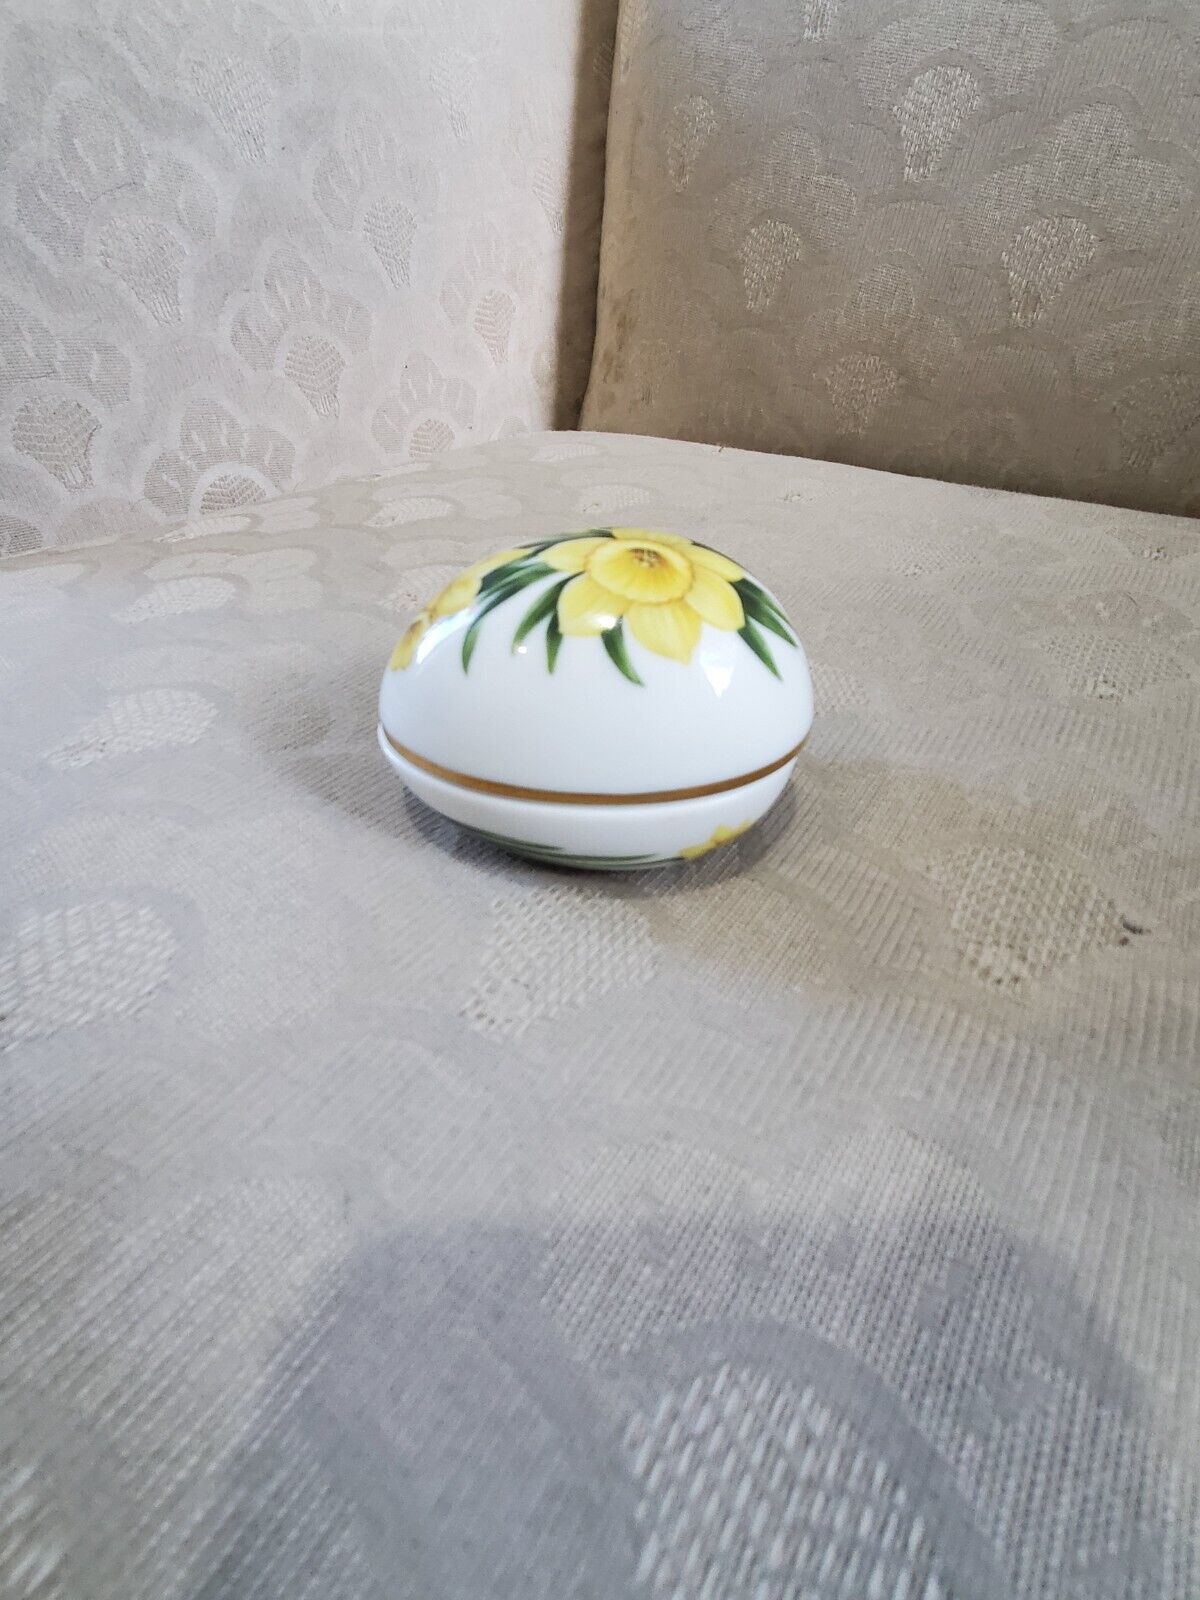 Danbury ceramic easter egg